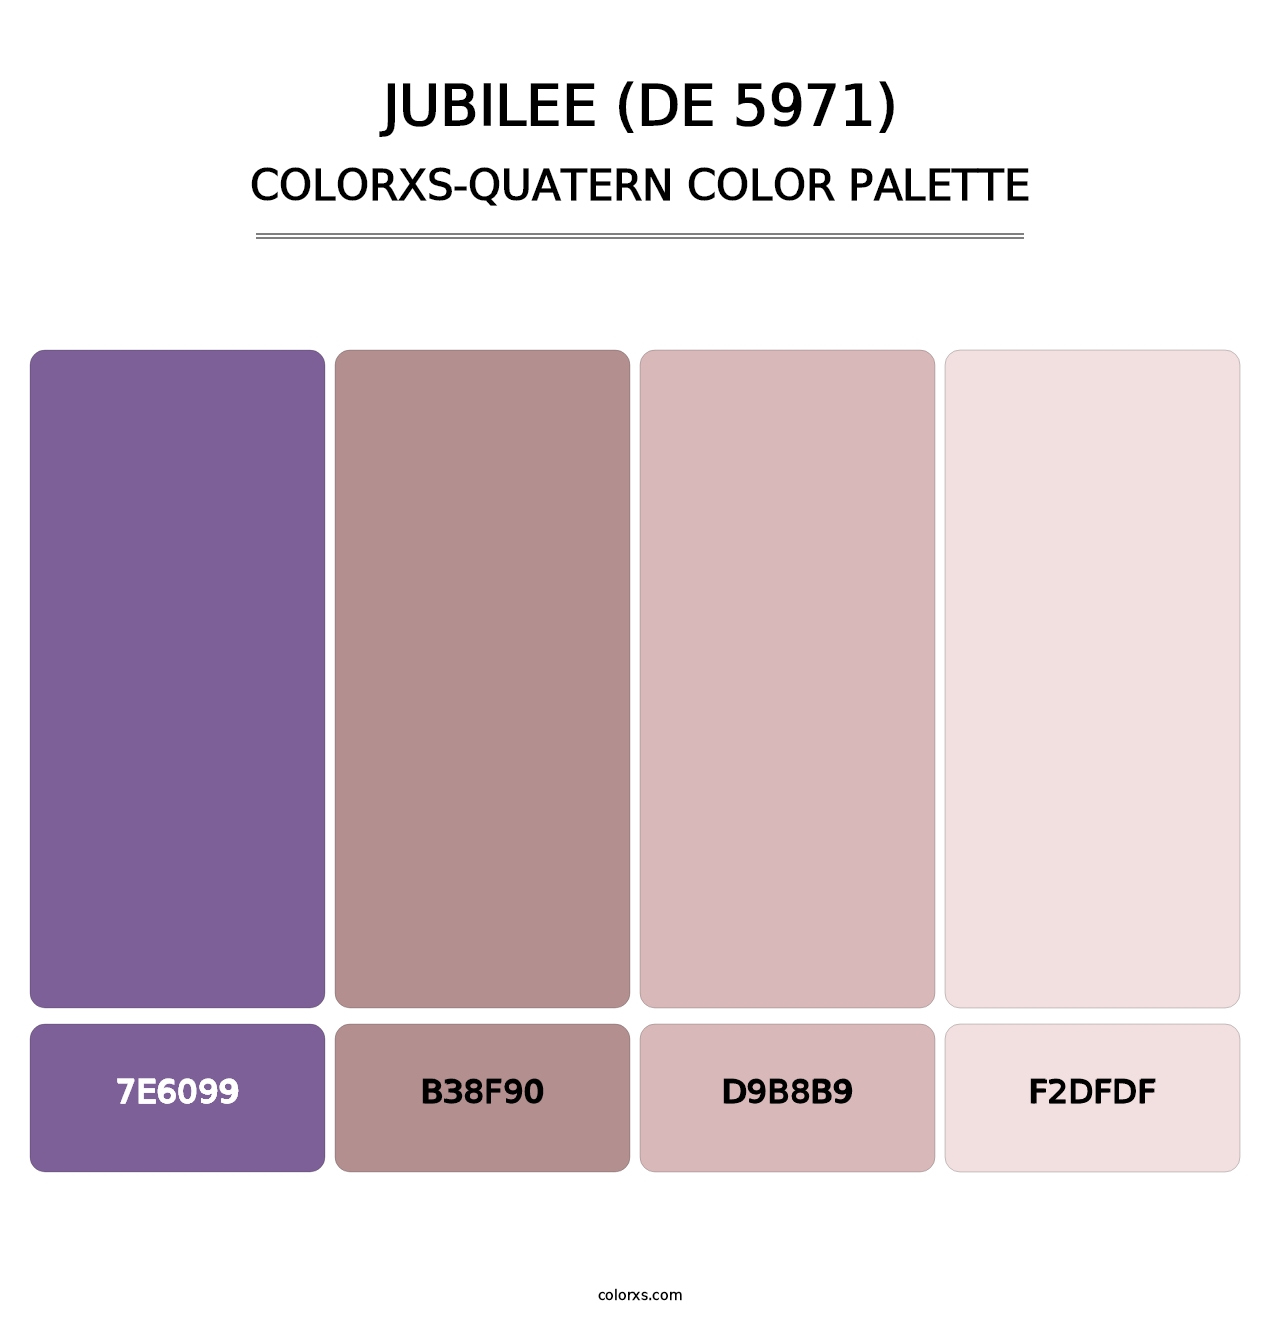 Jubilee (DE 5971) - Colorxs Quatern Palette